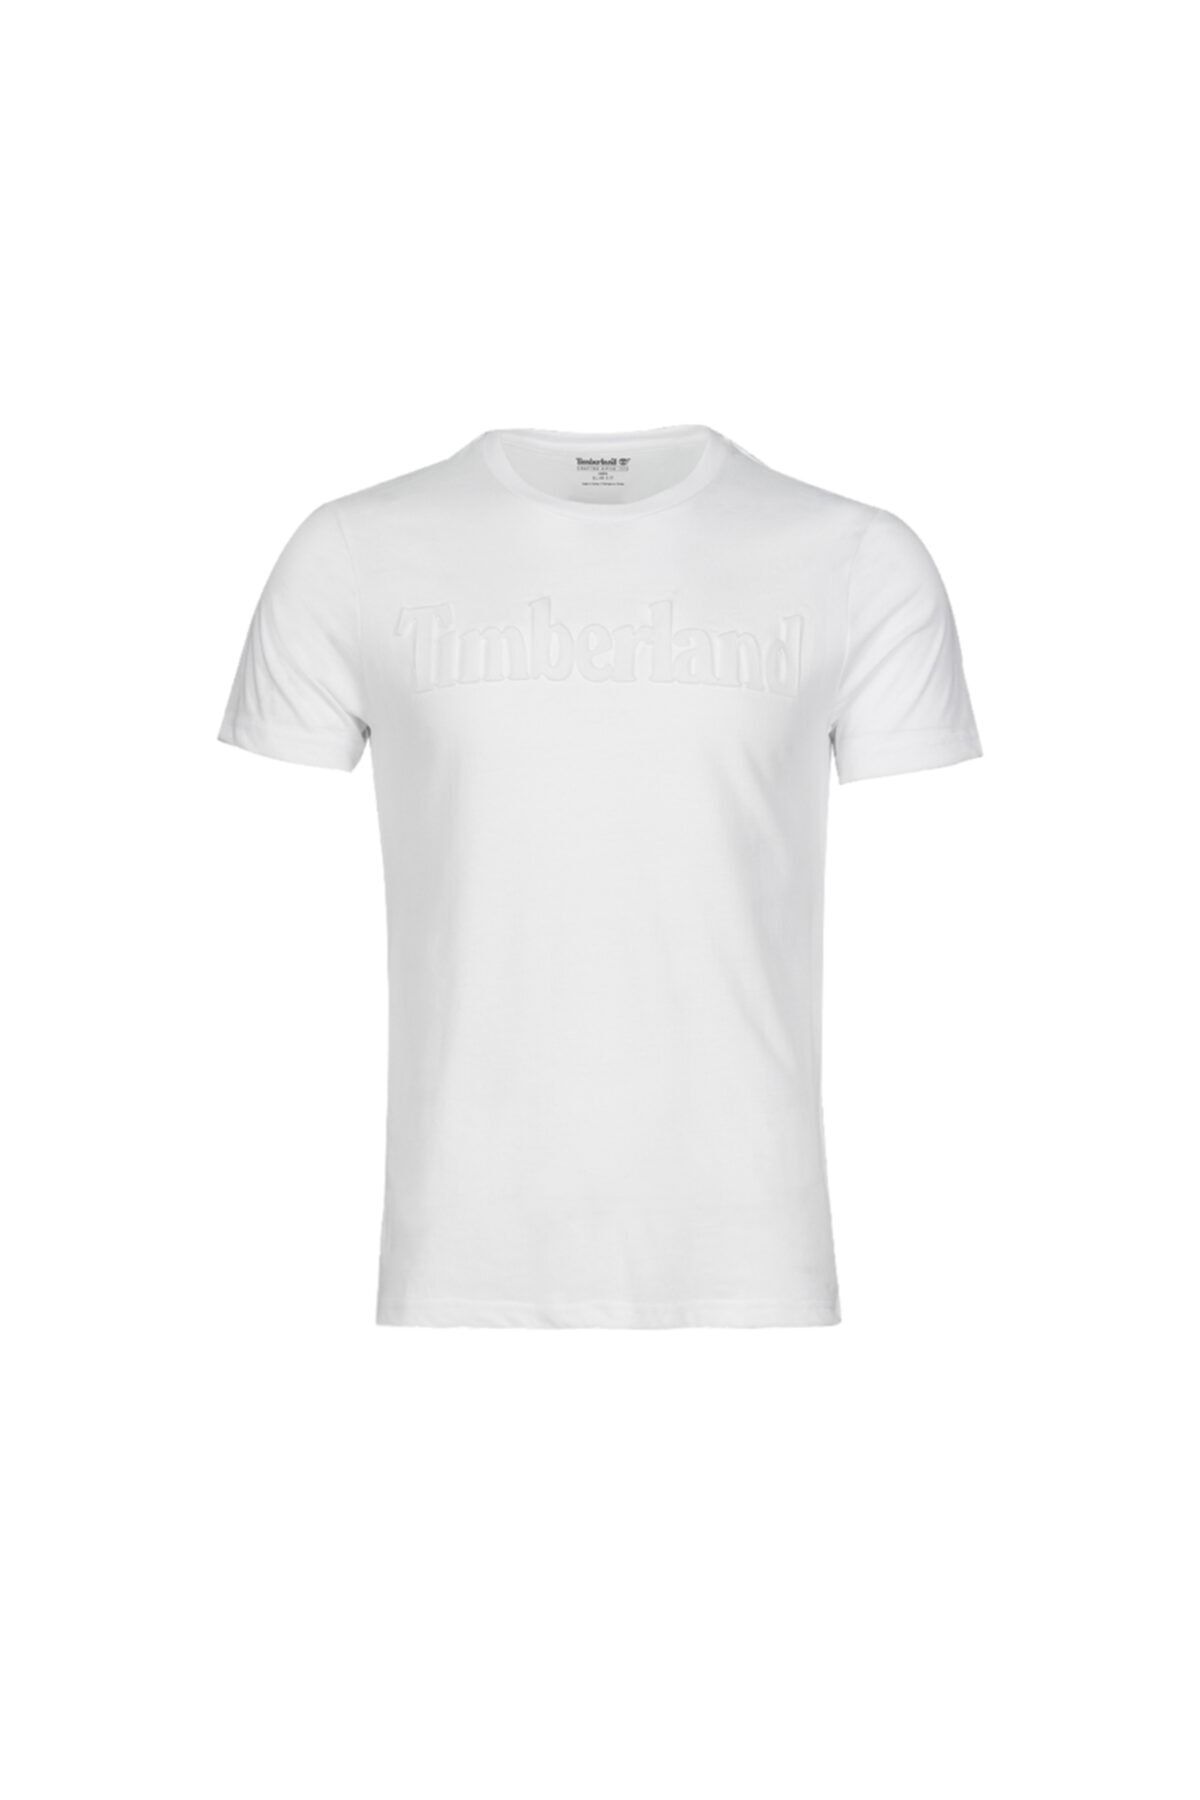 Timberland Erkek Beyaz Üç Boyutlu Baskılı Logo Kısa T-Shirt Slim Fit